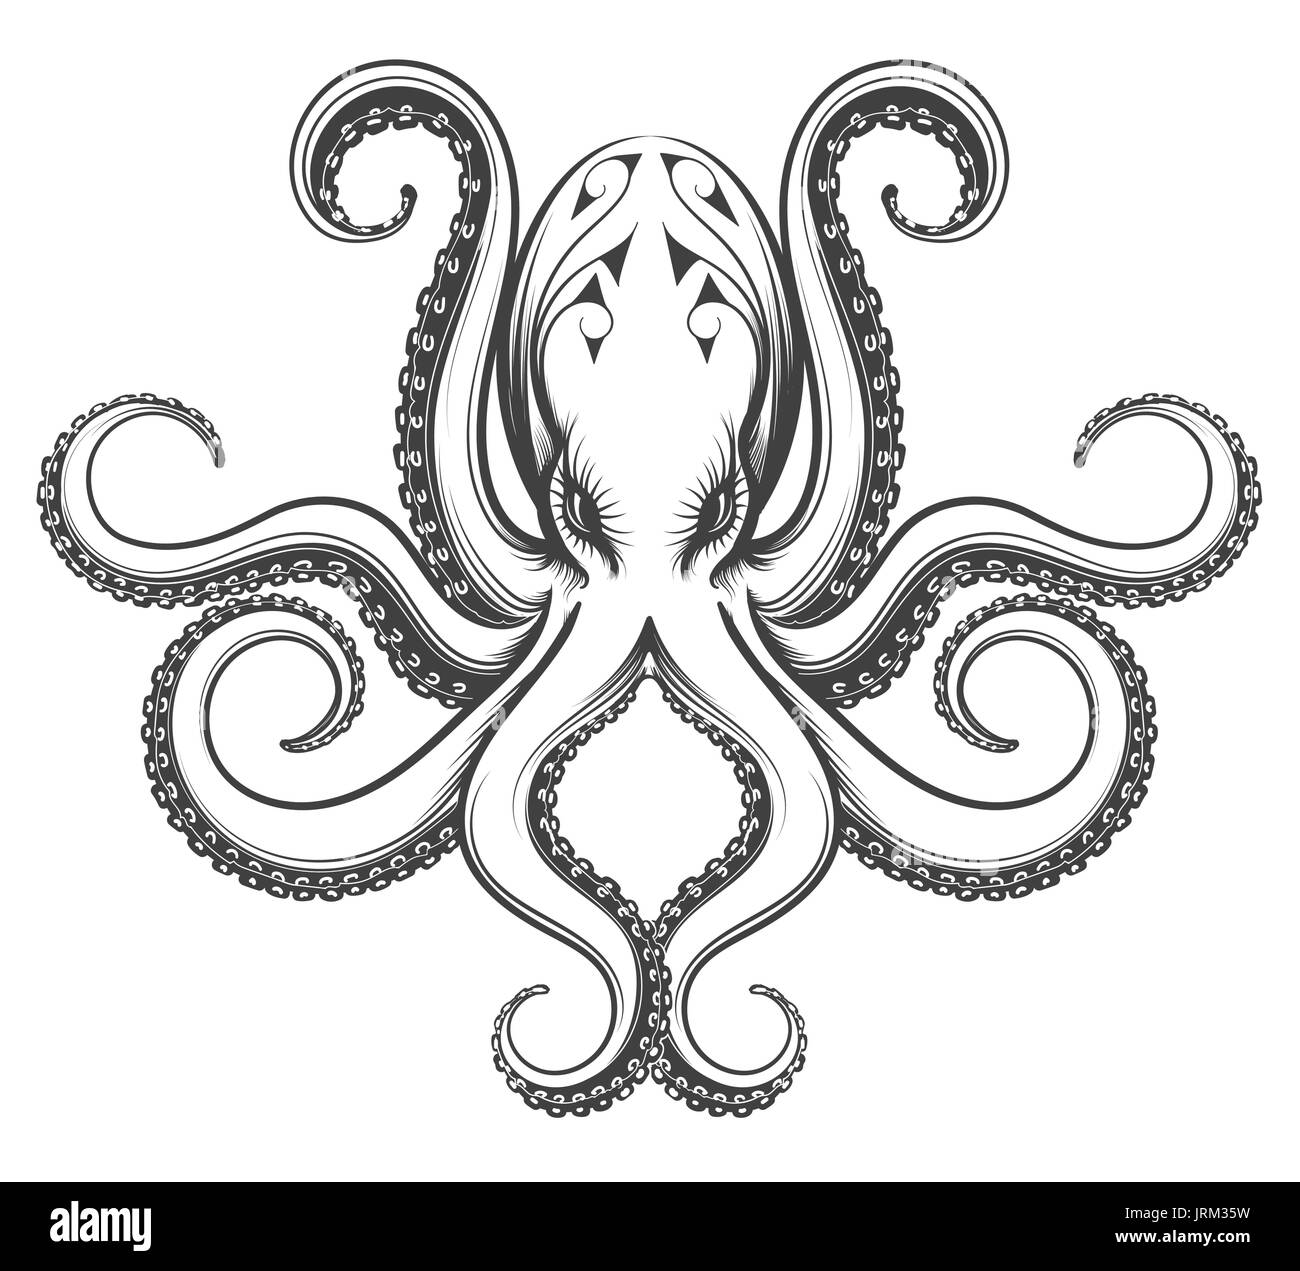 Octopus dessiné dans le style vintage de gravure. Vector illustration isolé sur fond blanc. Illustration de Vecteur